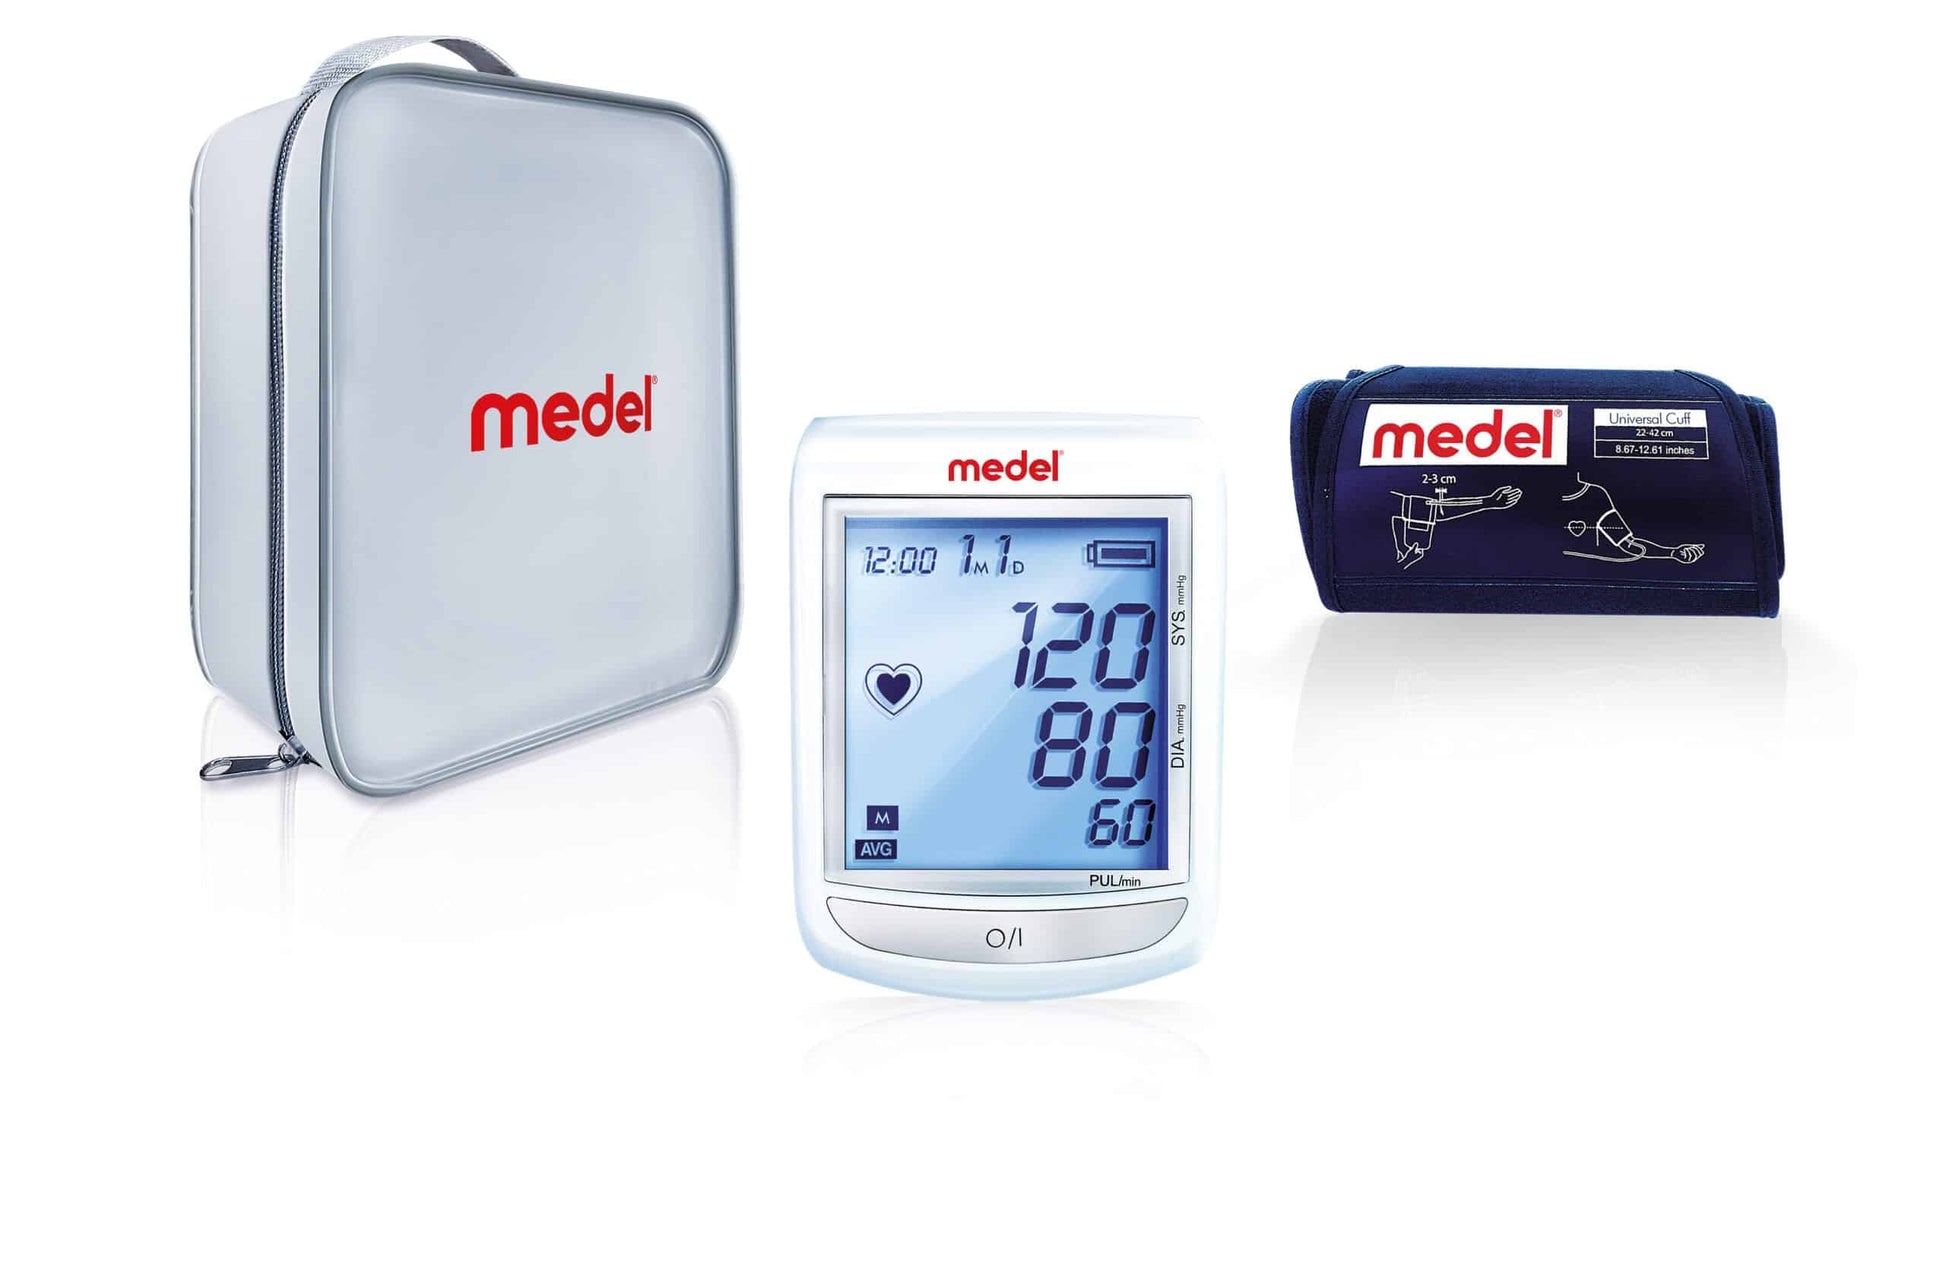 Medel Elite Blutdruckmessgerät mit Anzeige der Messwerte, begleitet von einer grauen Aufbewahrungsbox und einem marineblauen Beutel mit dem Markenlogo „Beurer GmbH“.